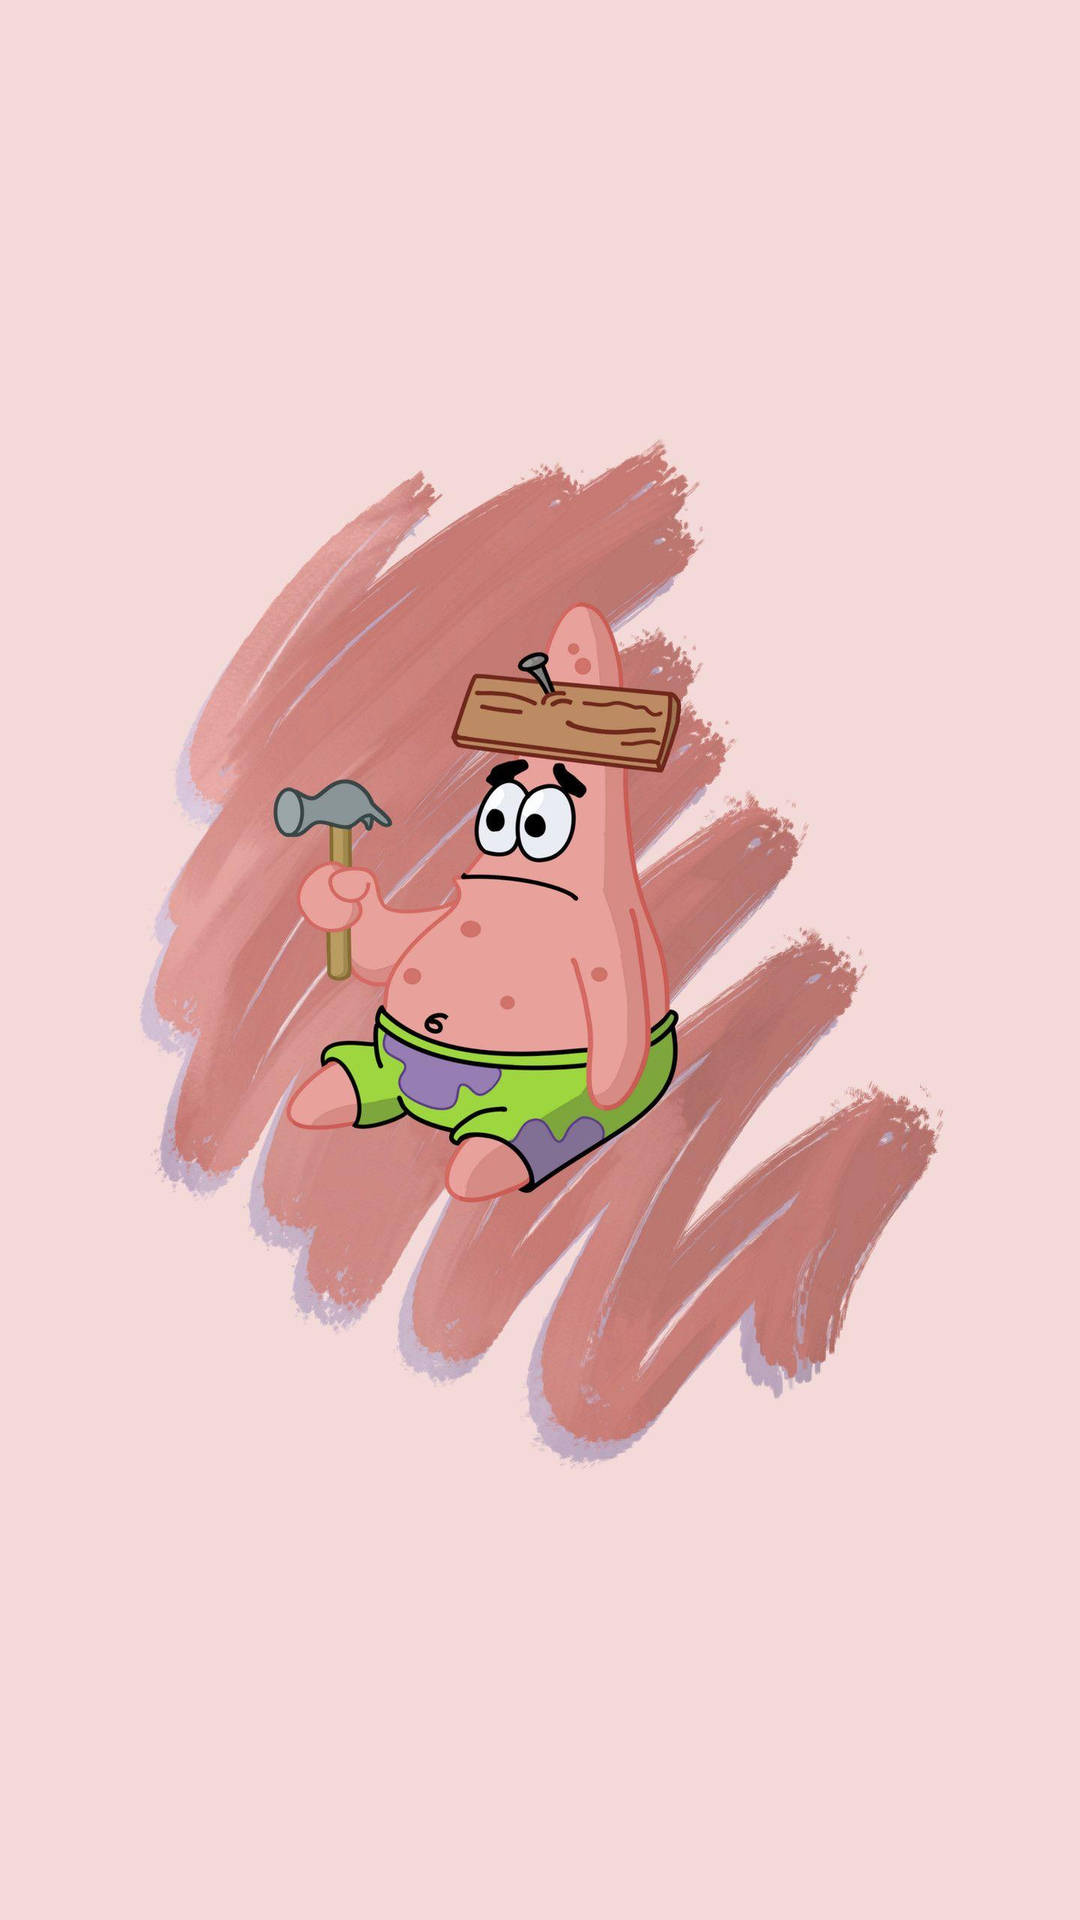 Patrick ønsker bare at have det sjovt Wallpaper